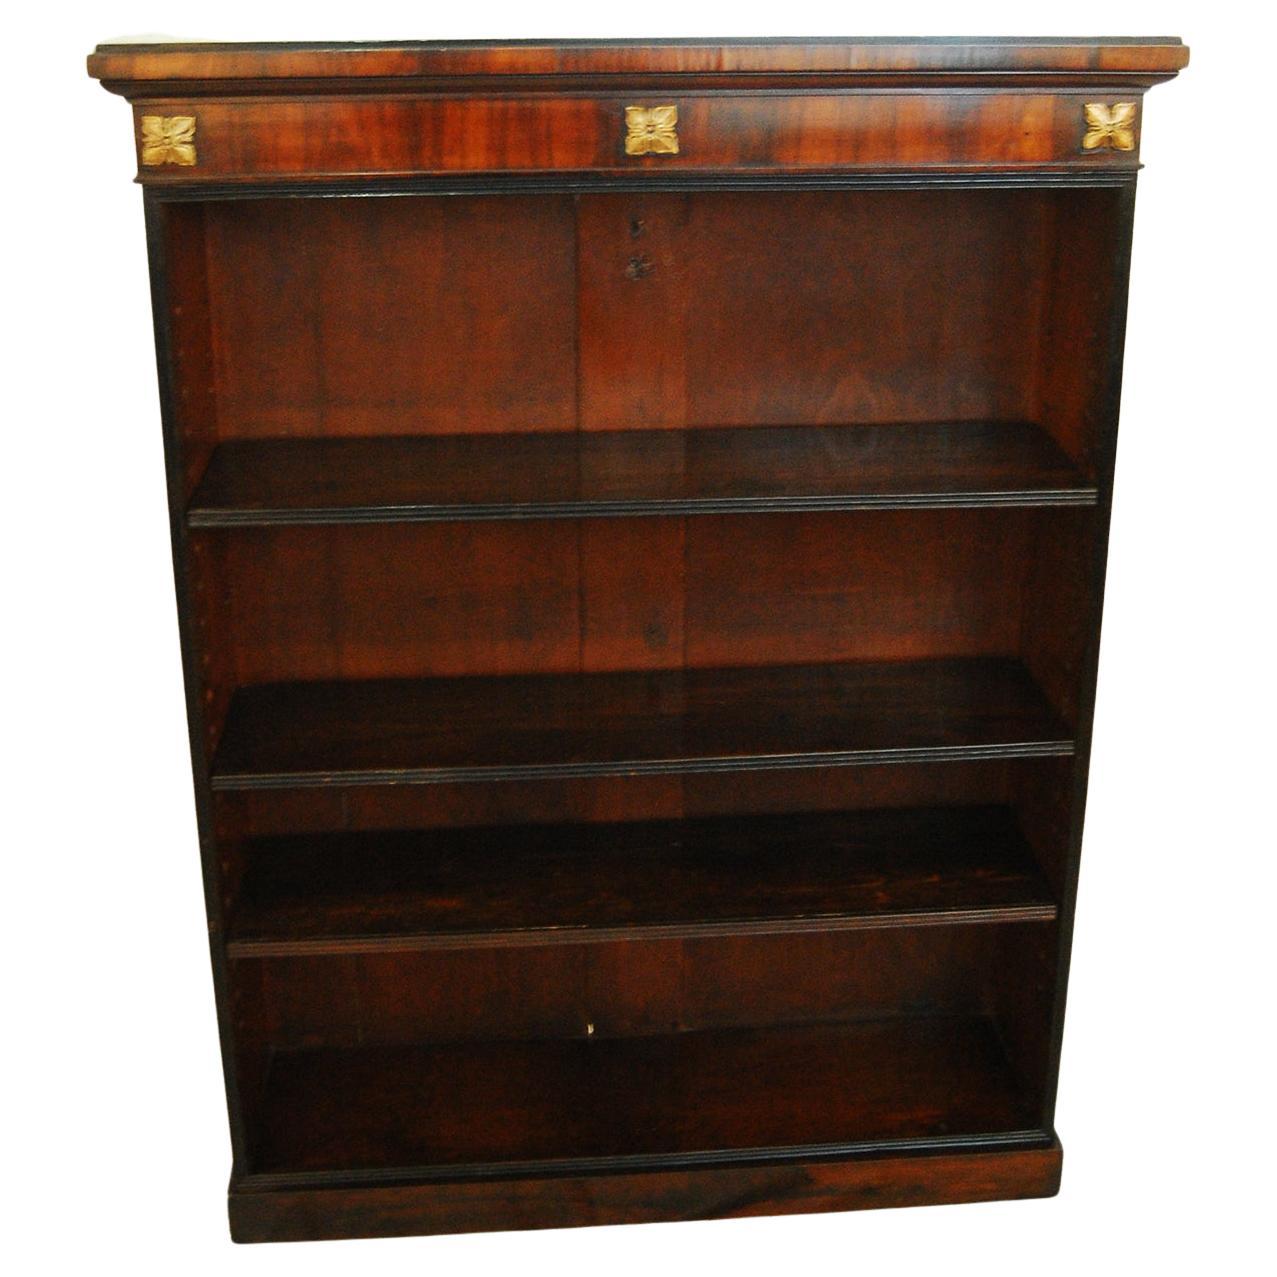 English Regency Rosewood Bookcase with Ebonized Detailing Adjustable Shelves